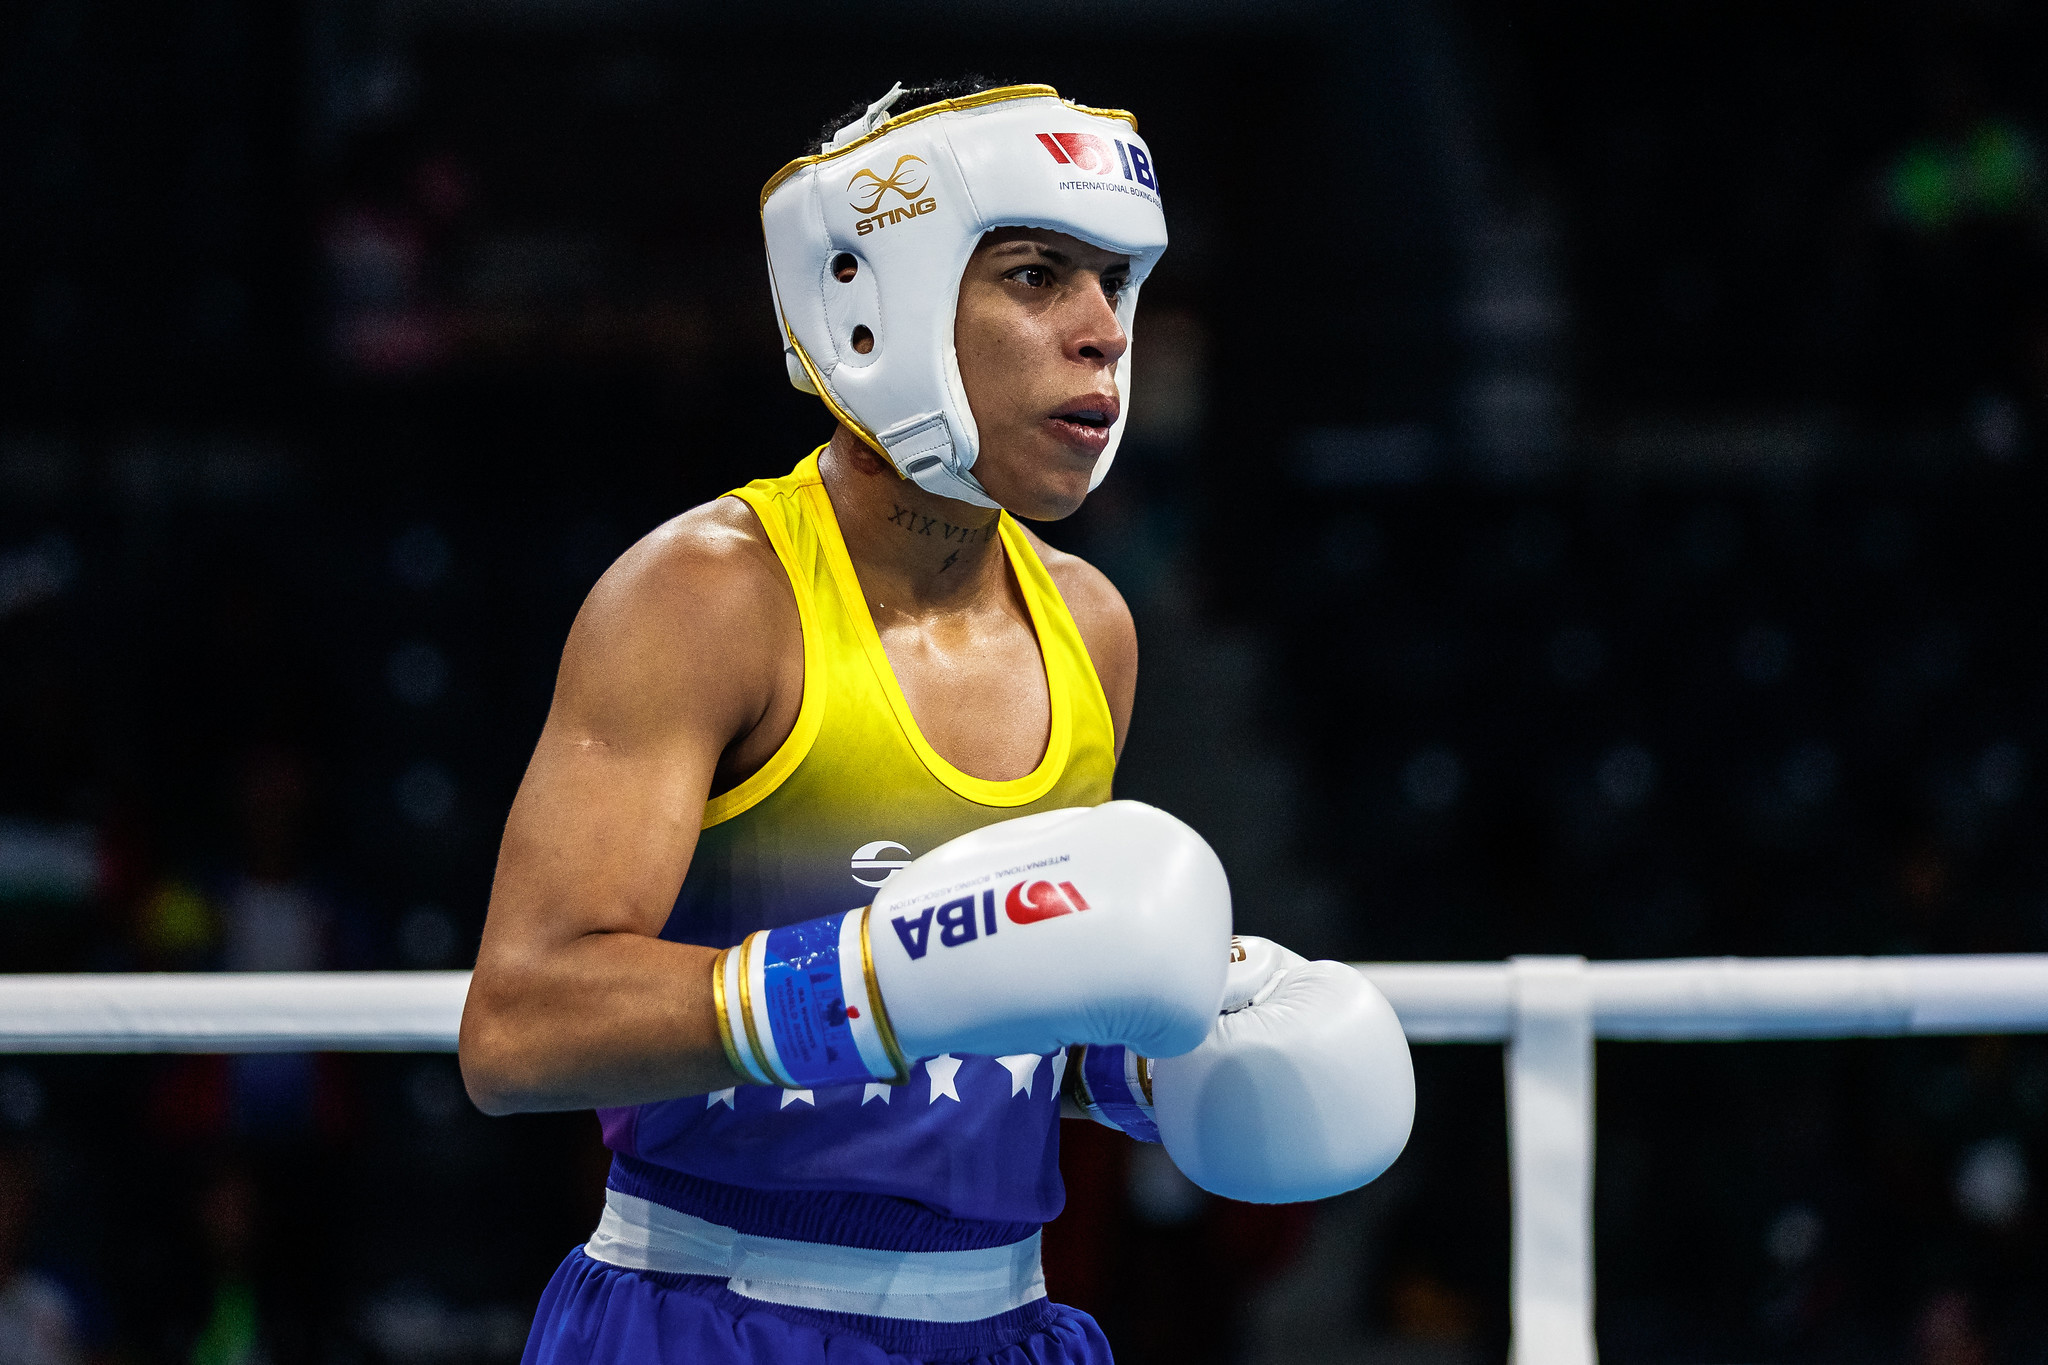 Documentary on Venezuelan boxer filmed at Women's World Boxing Championships